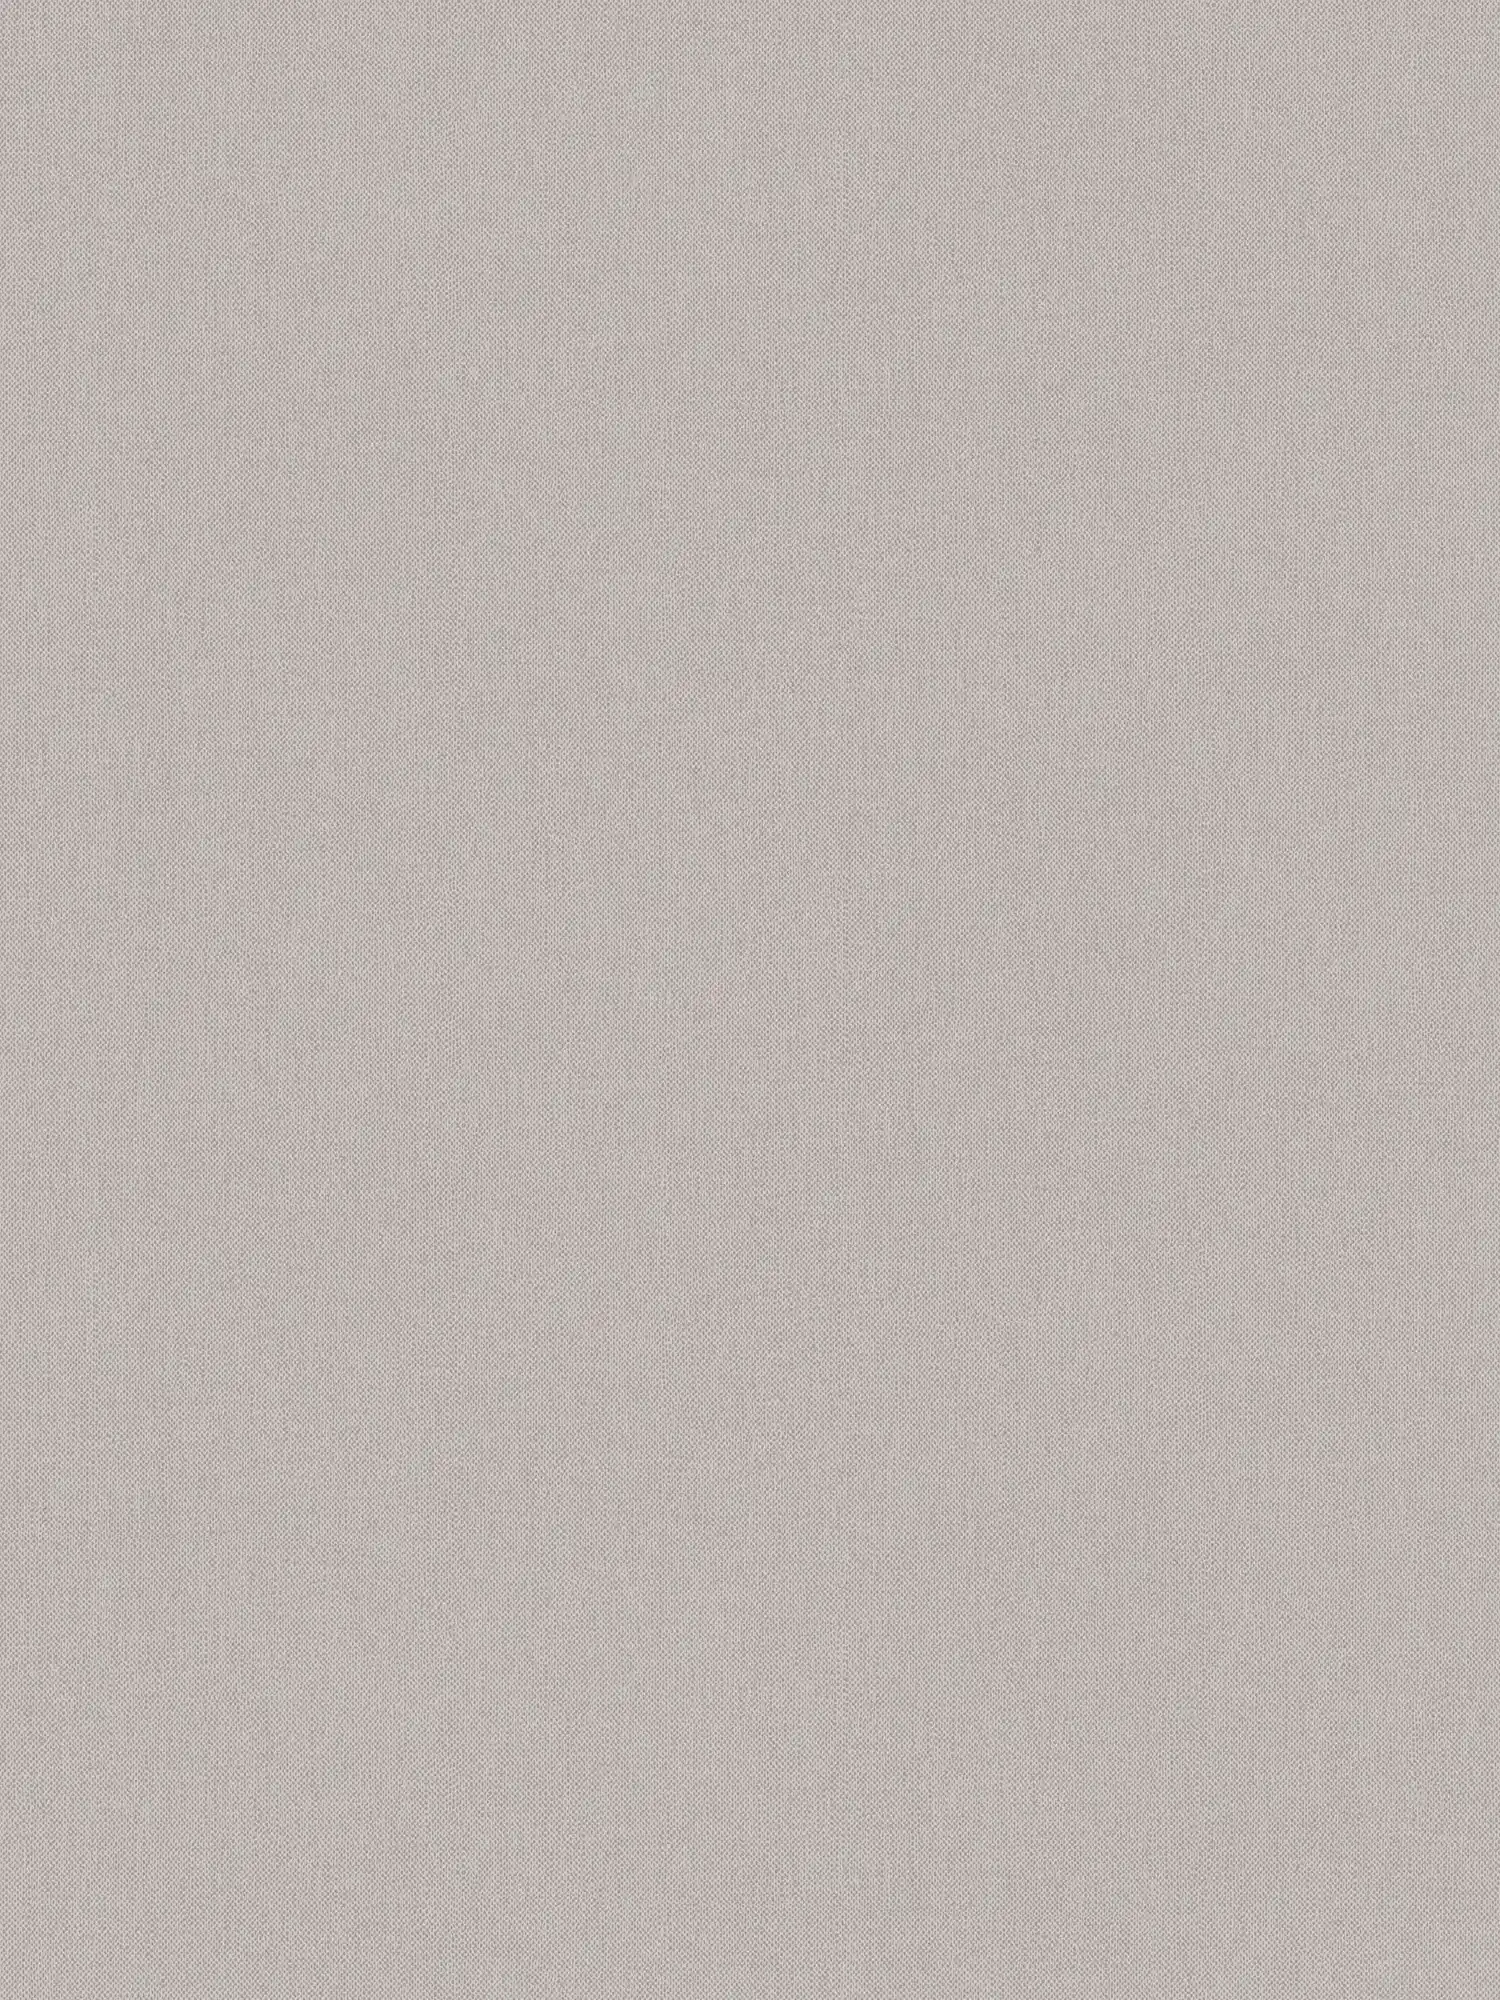 papel pintado gris topo liso beige con aspecto textil - gris, marrón
